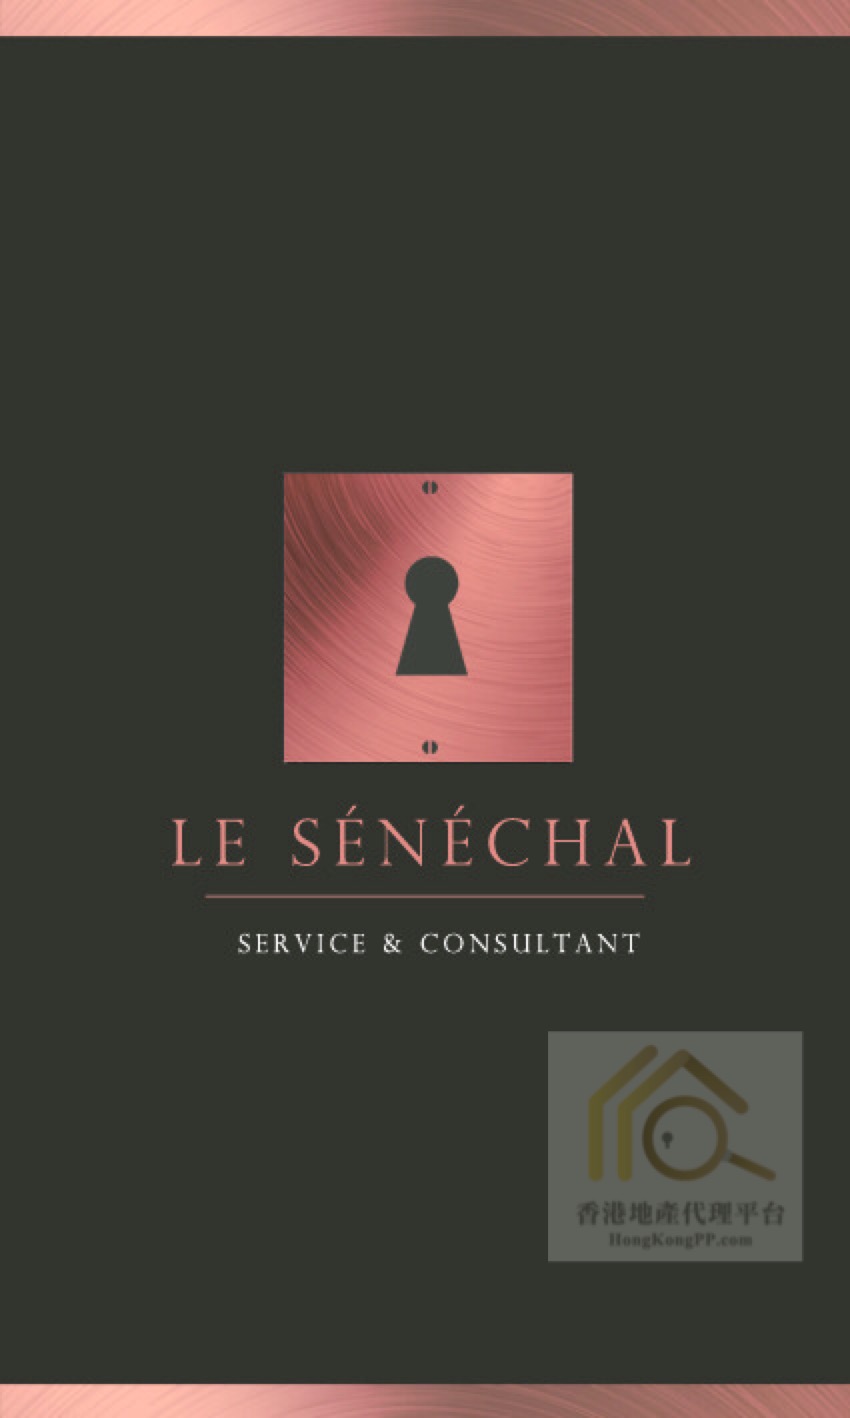 住宅地產代理: Le Senechal Service & Consultant Company Limited